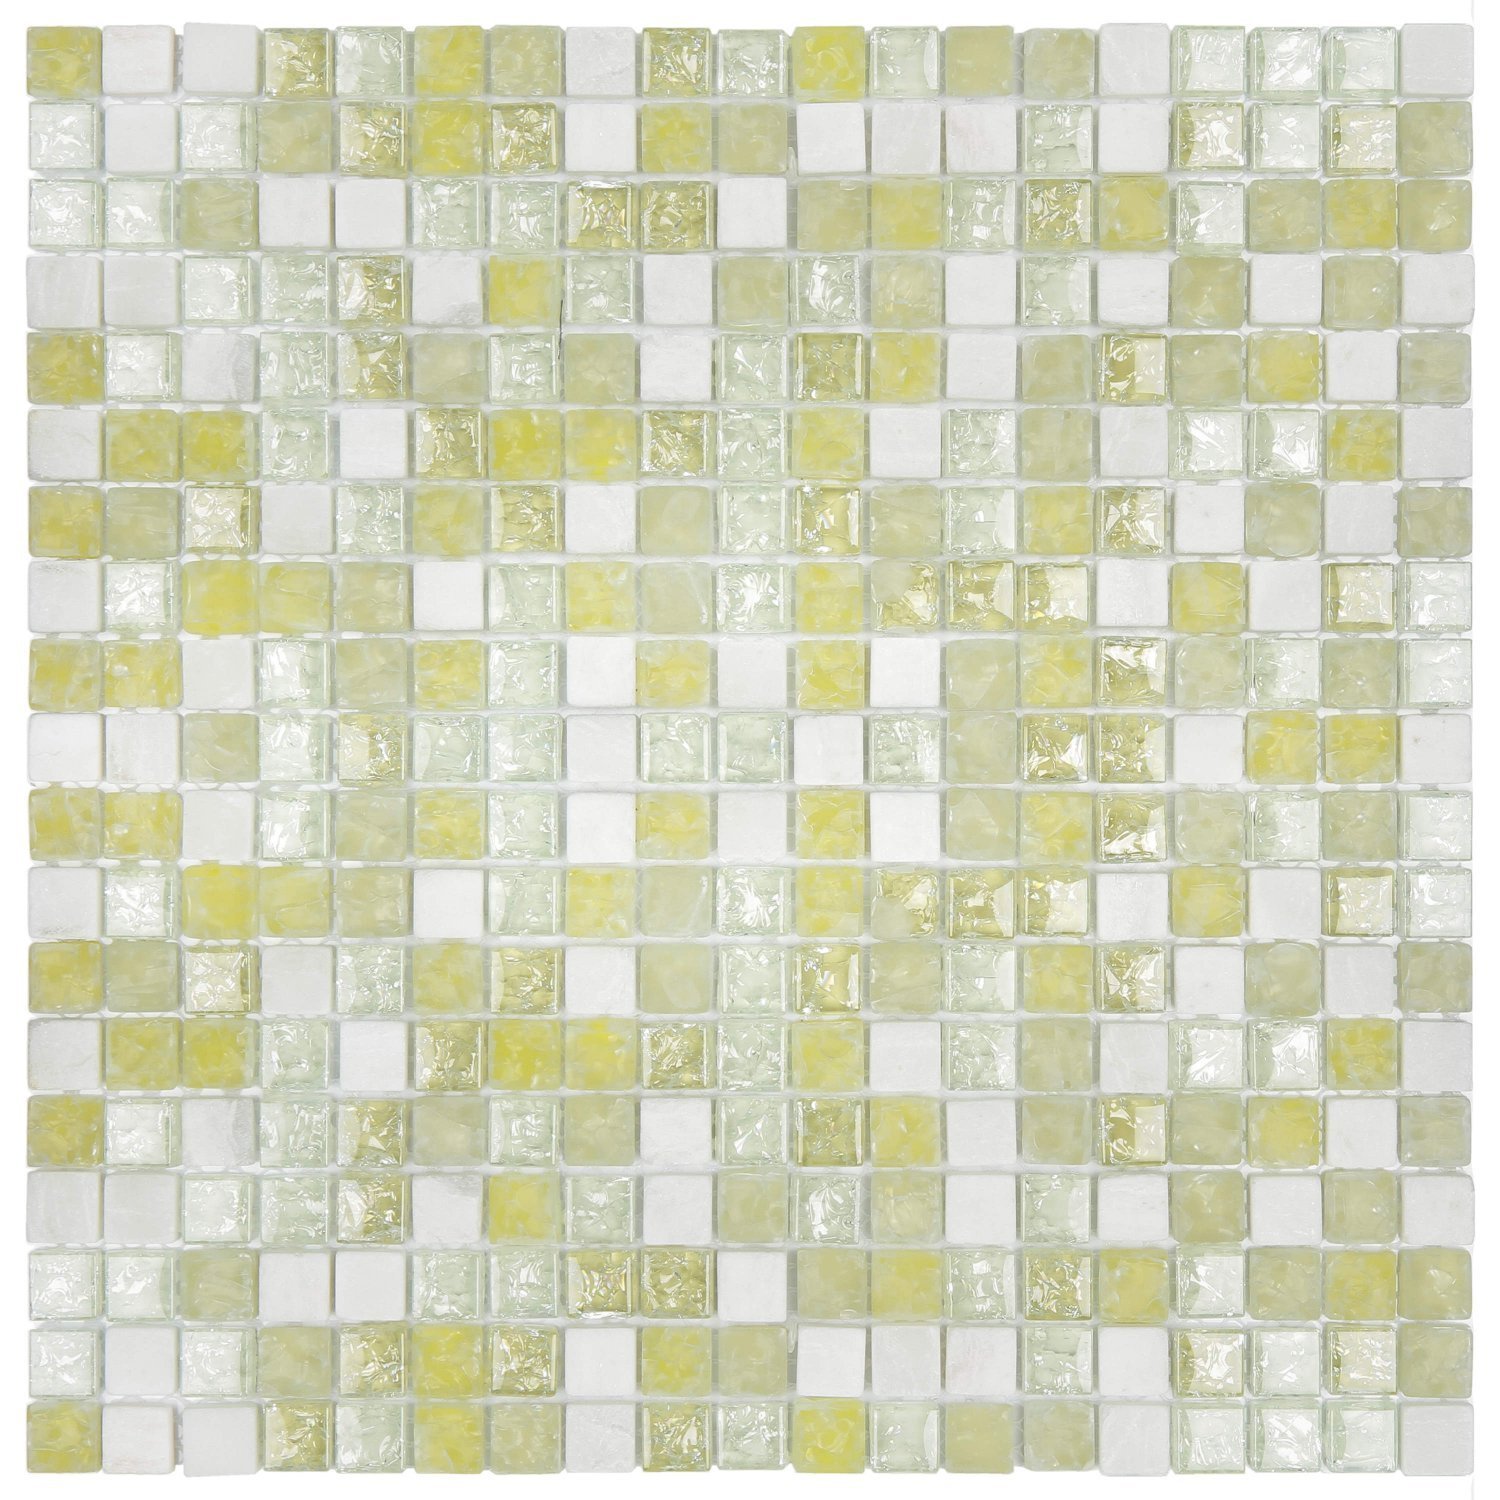 Pastilha Mesclada de Mármore e Vidro 31cm x 31cm Stone Glass Mosaic (Placas)